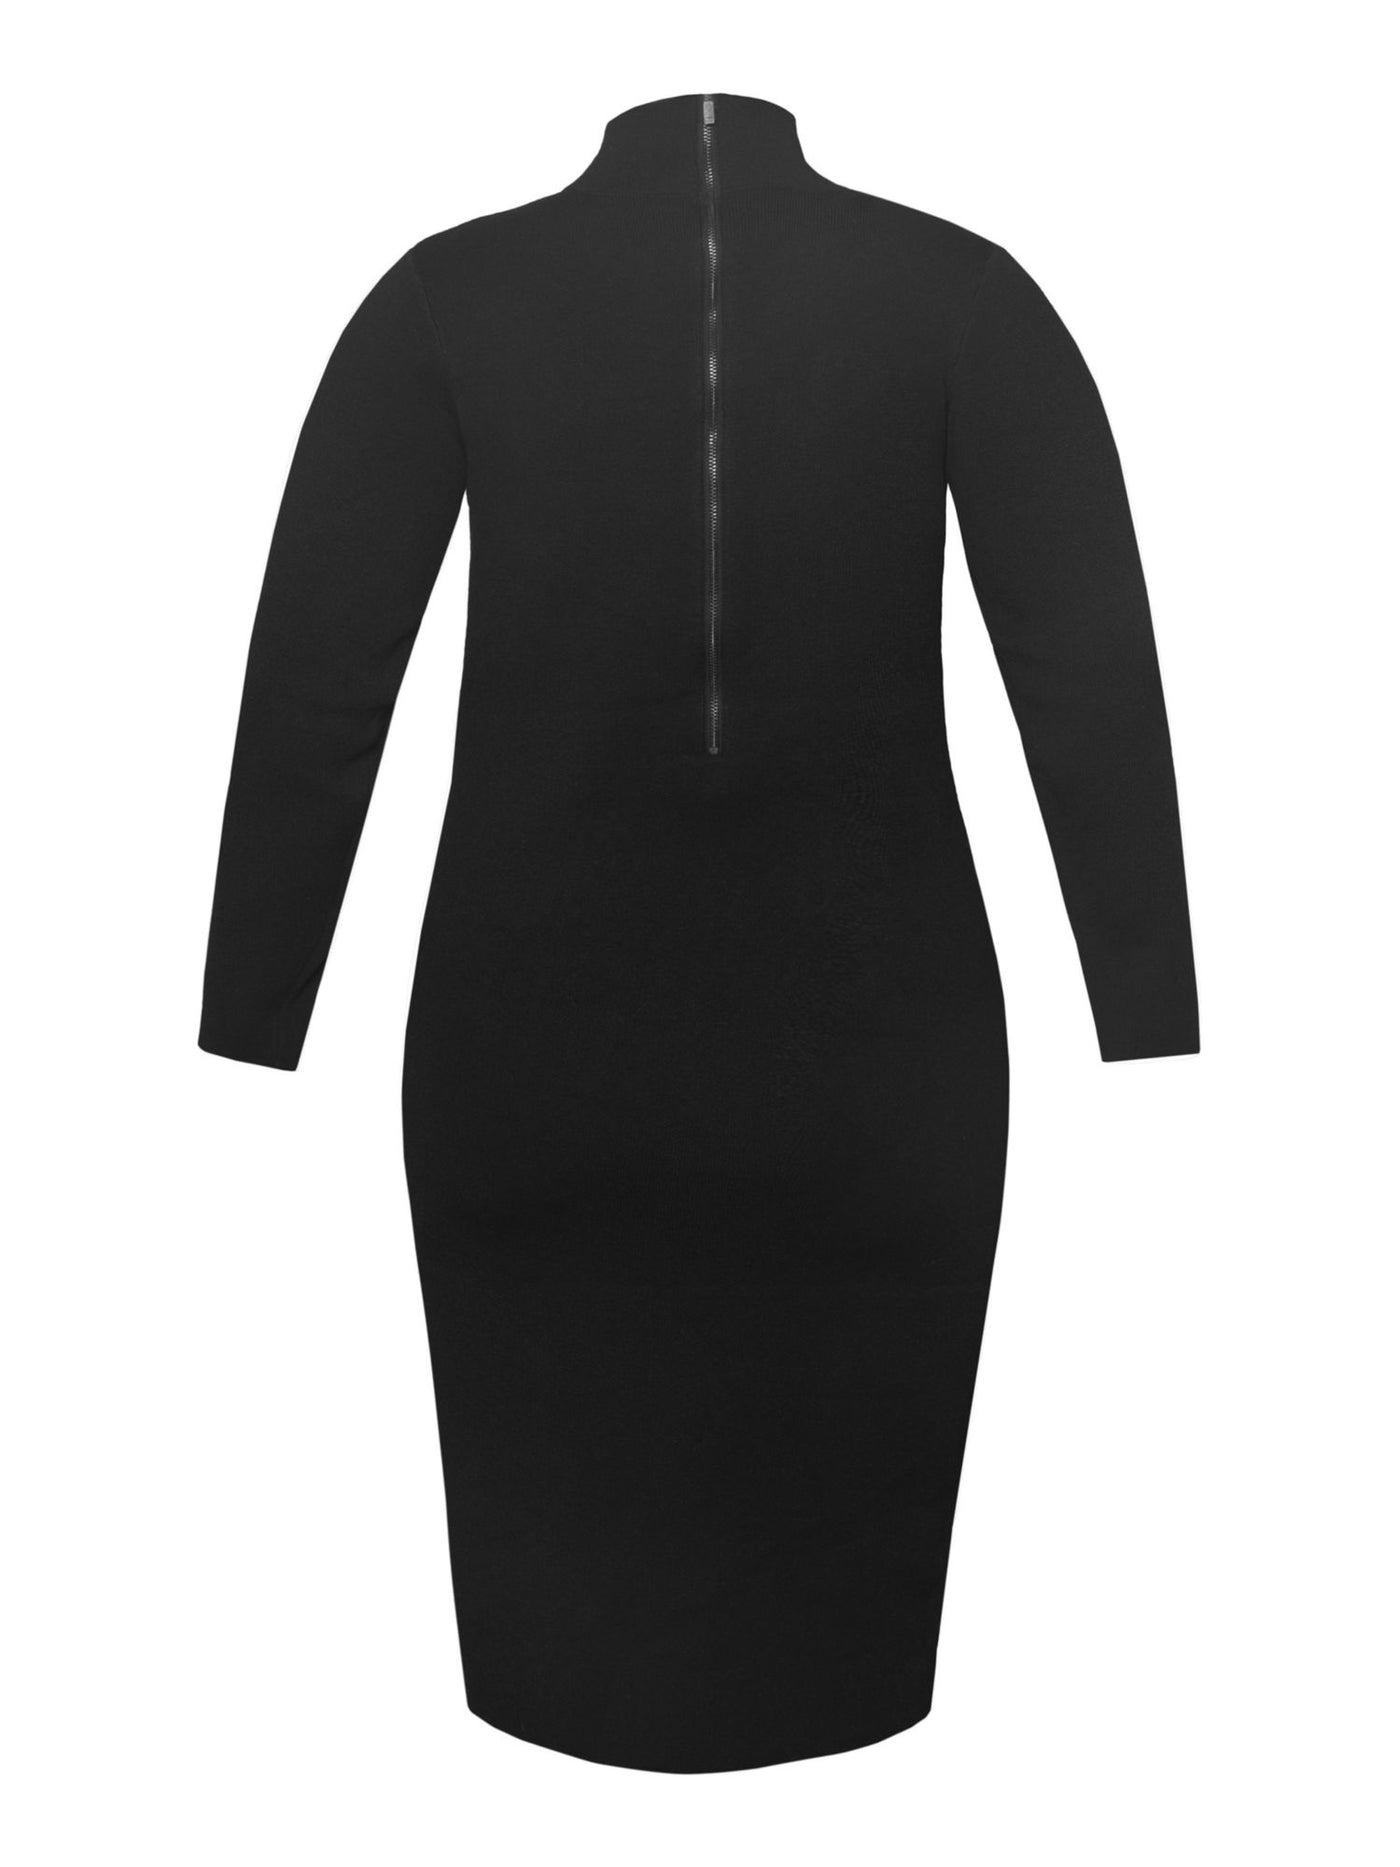 RACHEL RACHEL ROY Womens Black Stretch Cut Out Zippered Unlined Long Sleeve Mock Neck Midi Wear To Work Sweater Dress Plus 3X